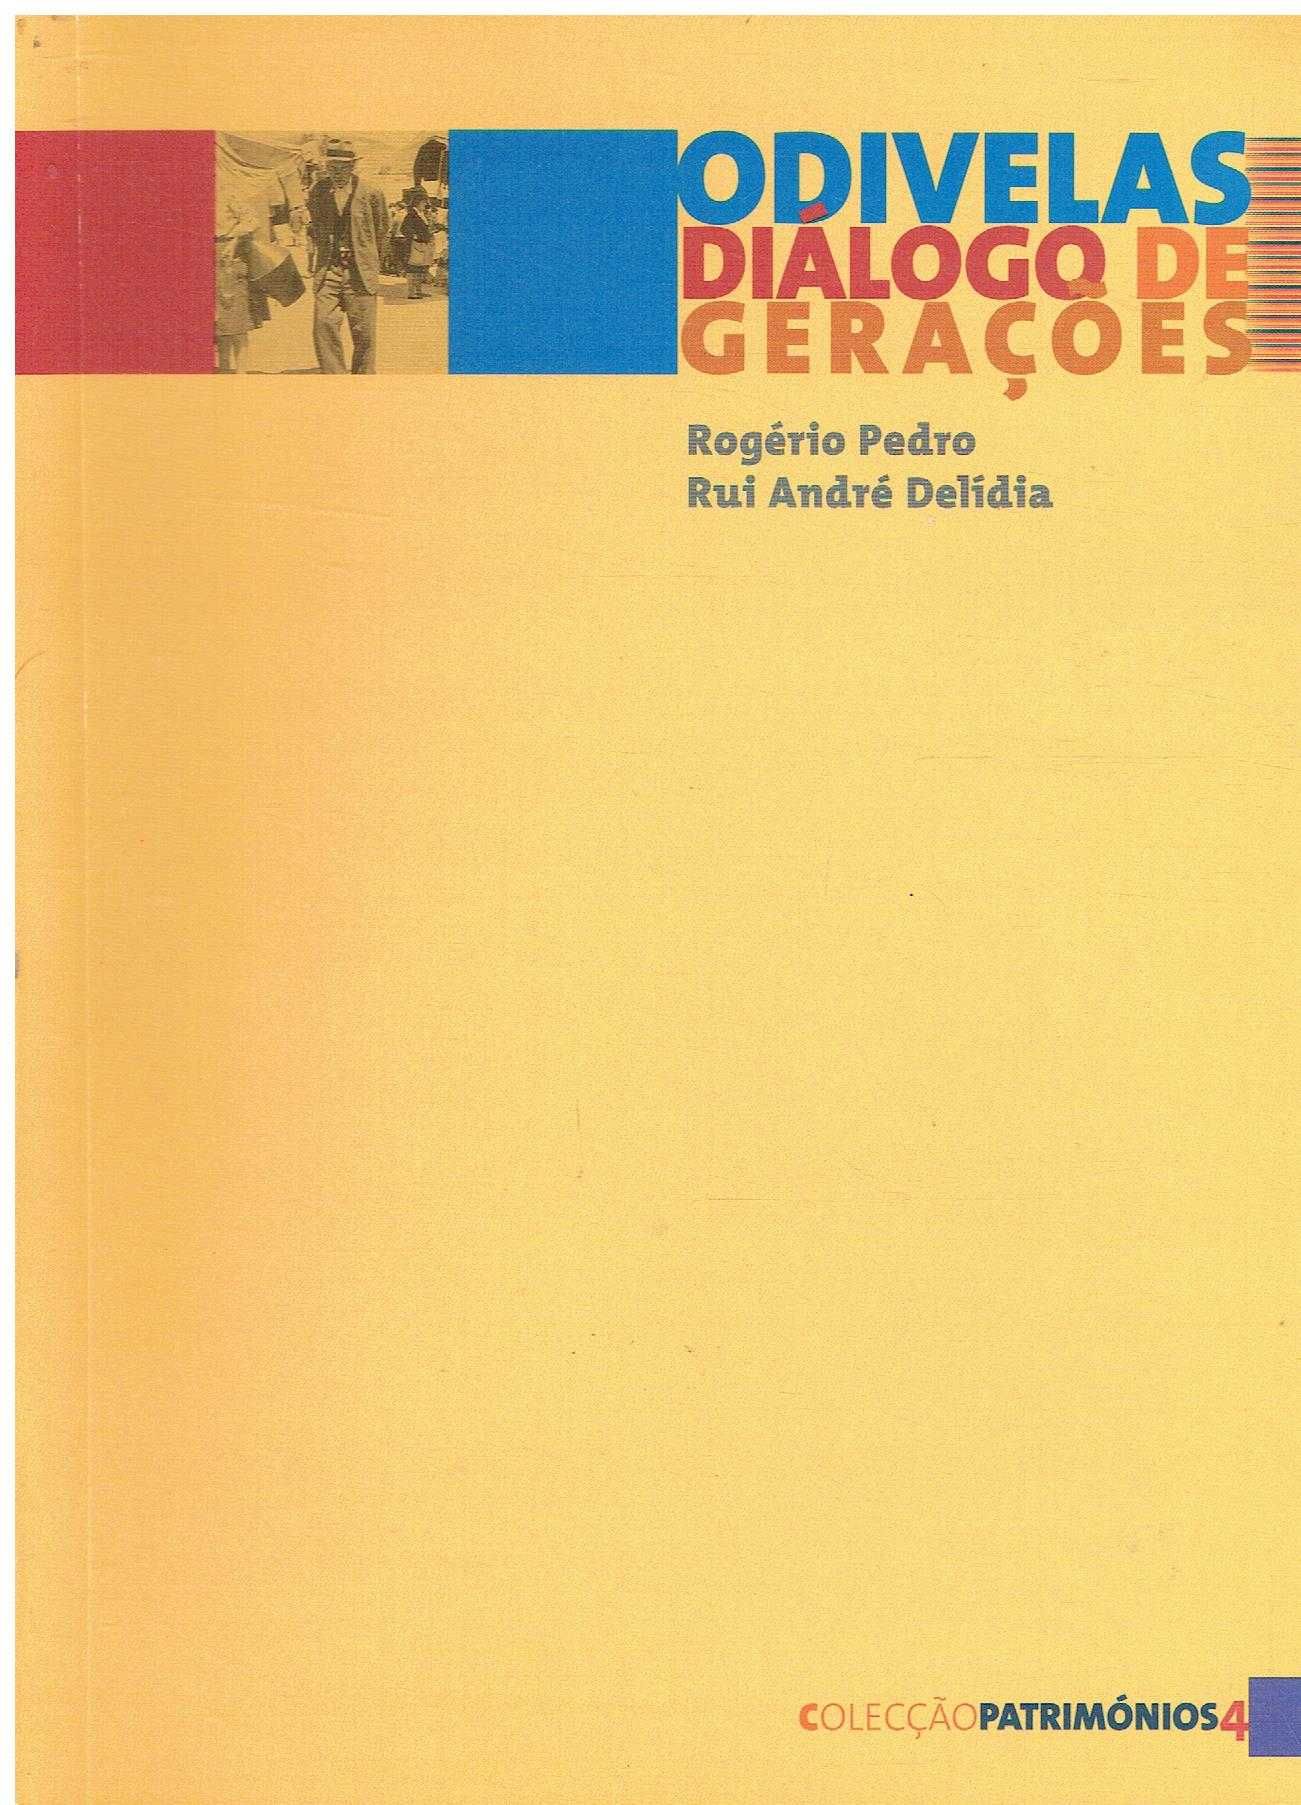 11066

Odivelas : diálogo de gerações 
de Rui André Delídia ;